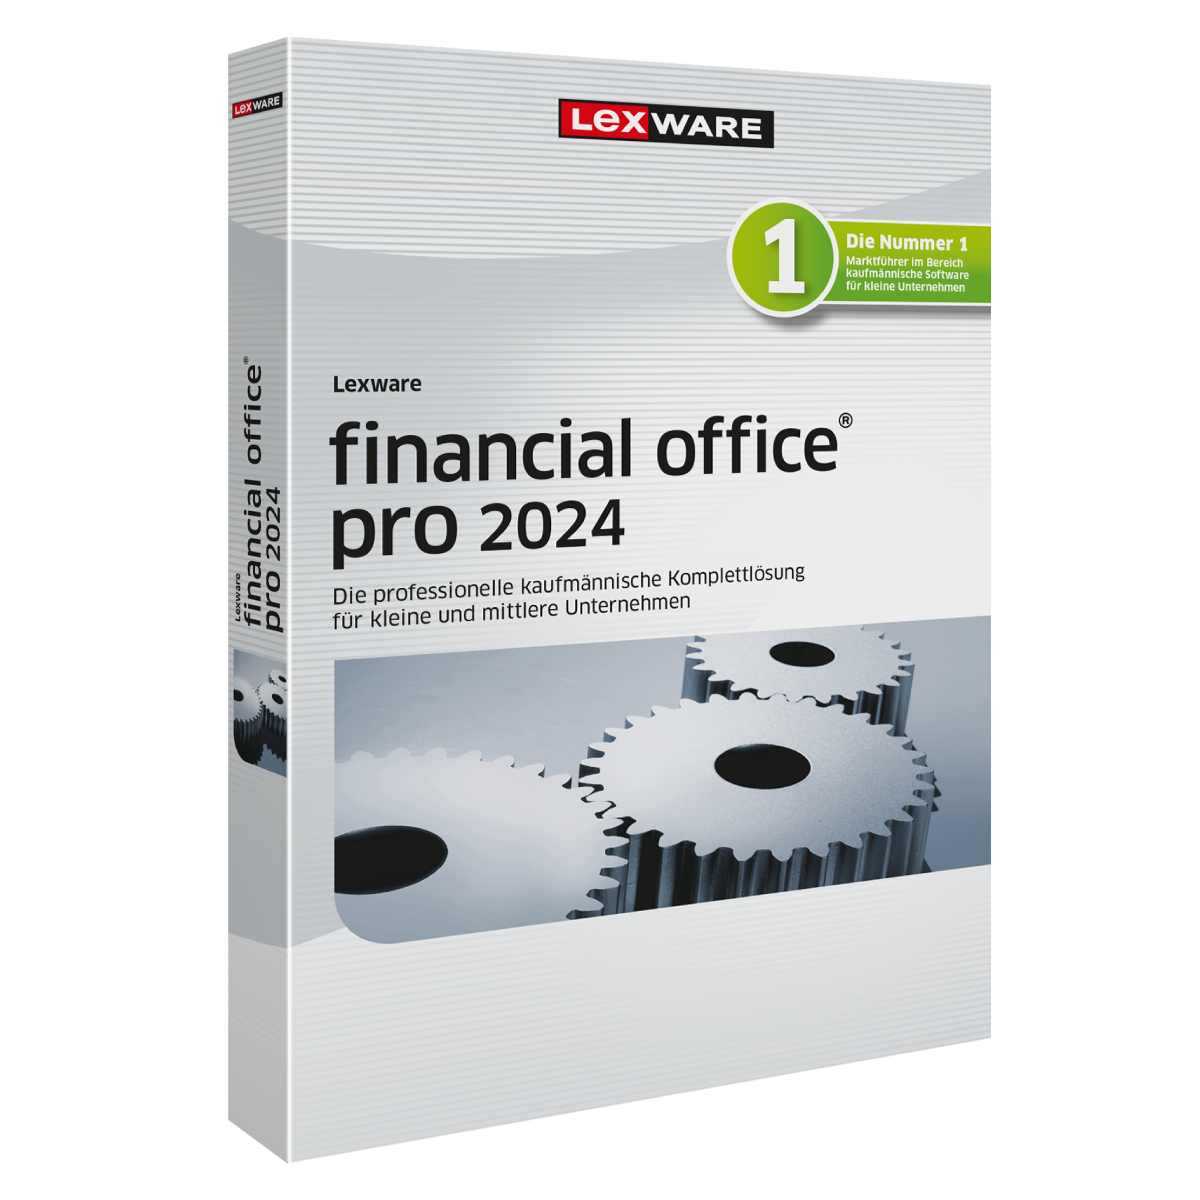 Lexware financial office pro 2024 - Abo von Lexware